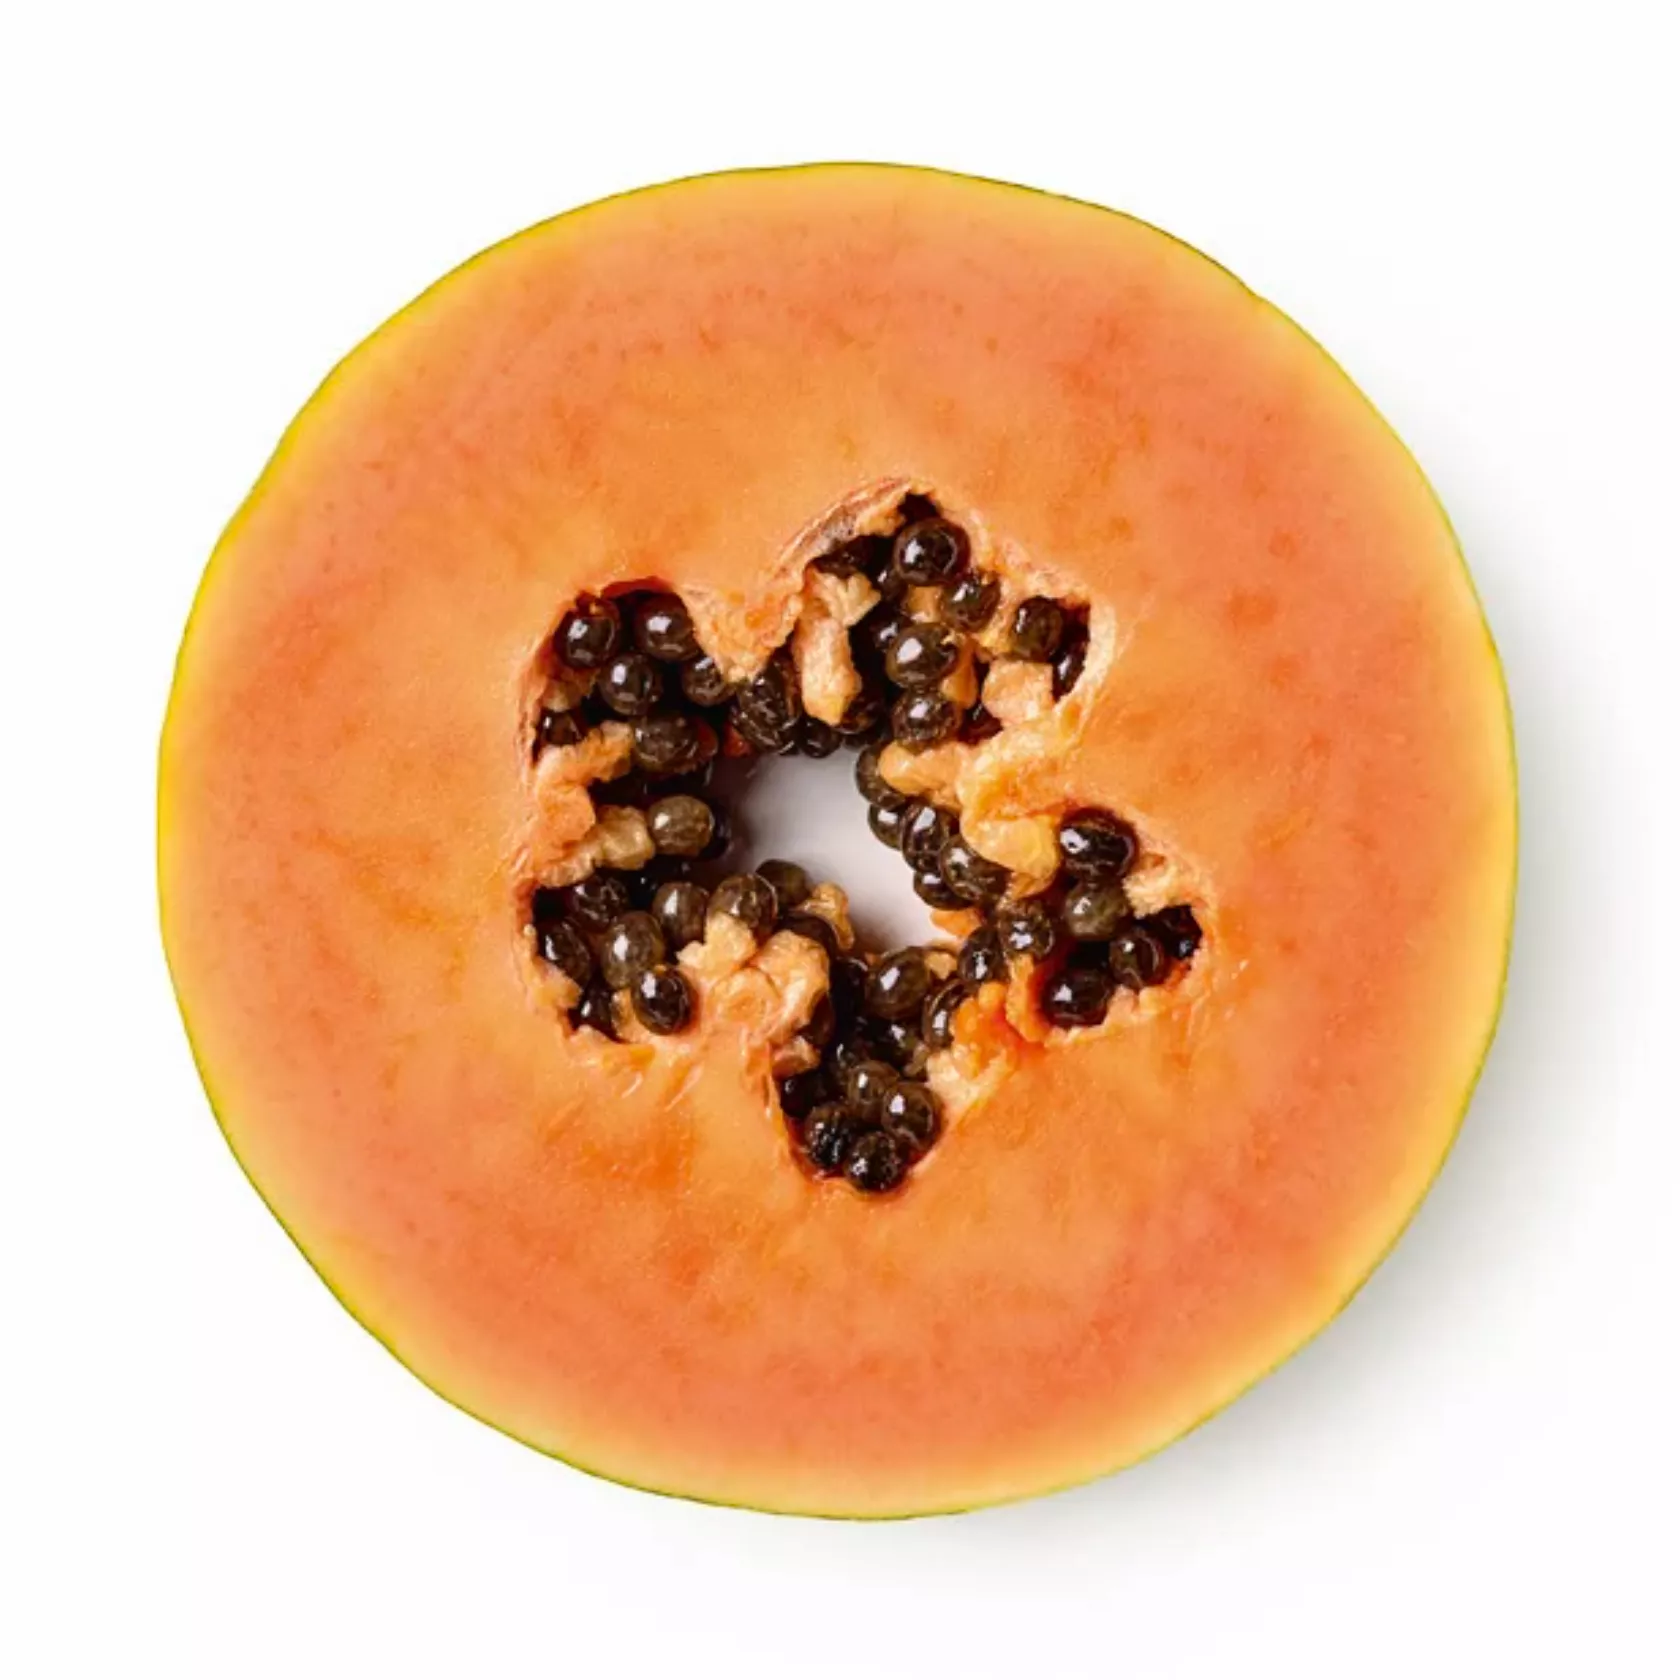 Aufgeschnitte Papaya (Querschnitt), oranges Fruchtfleisch und schwarze Kerne.